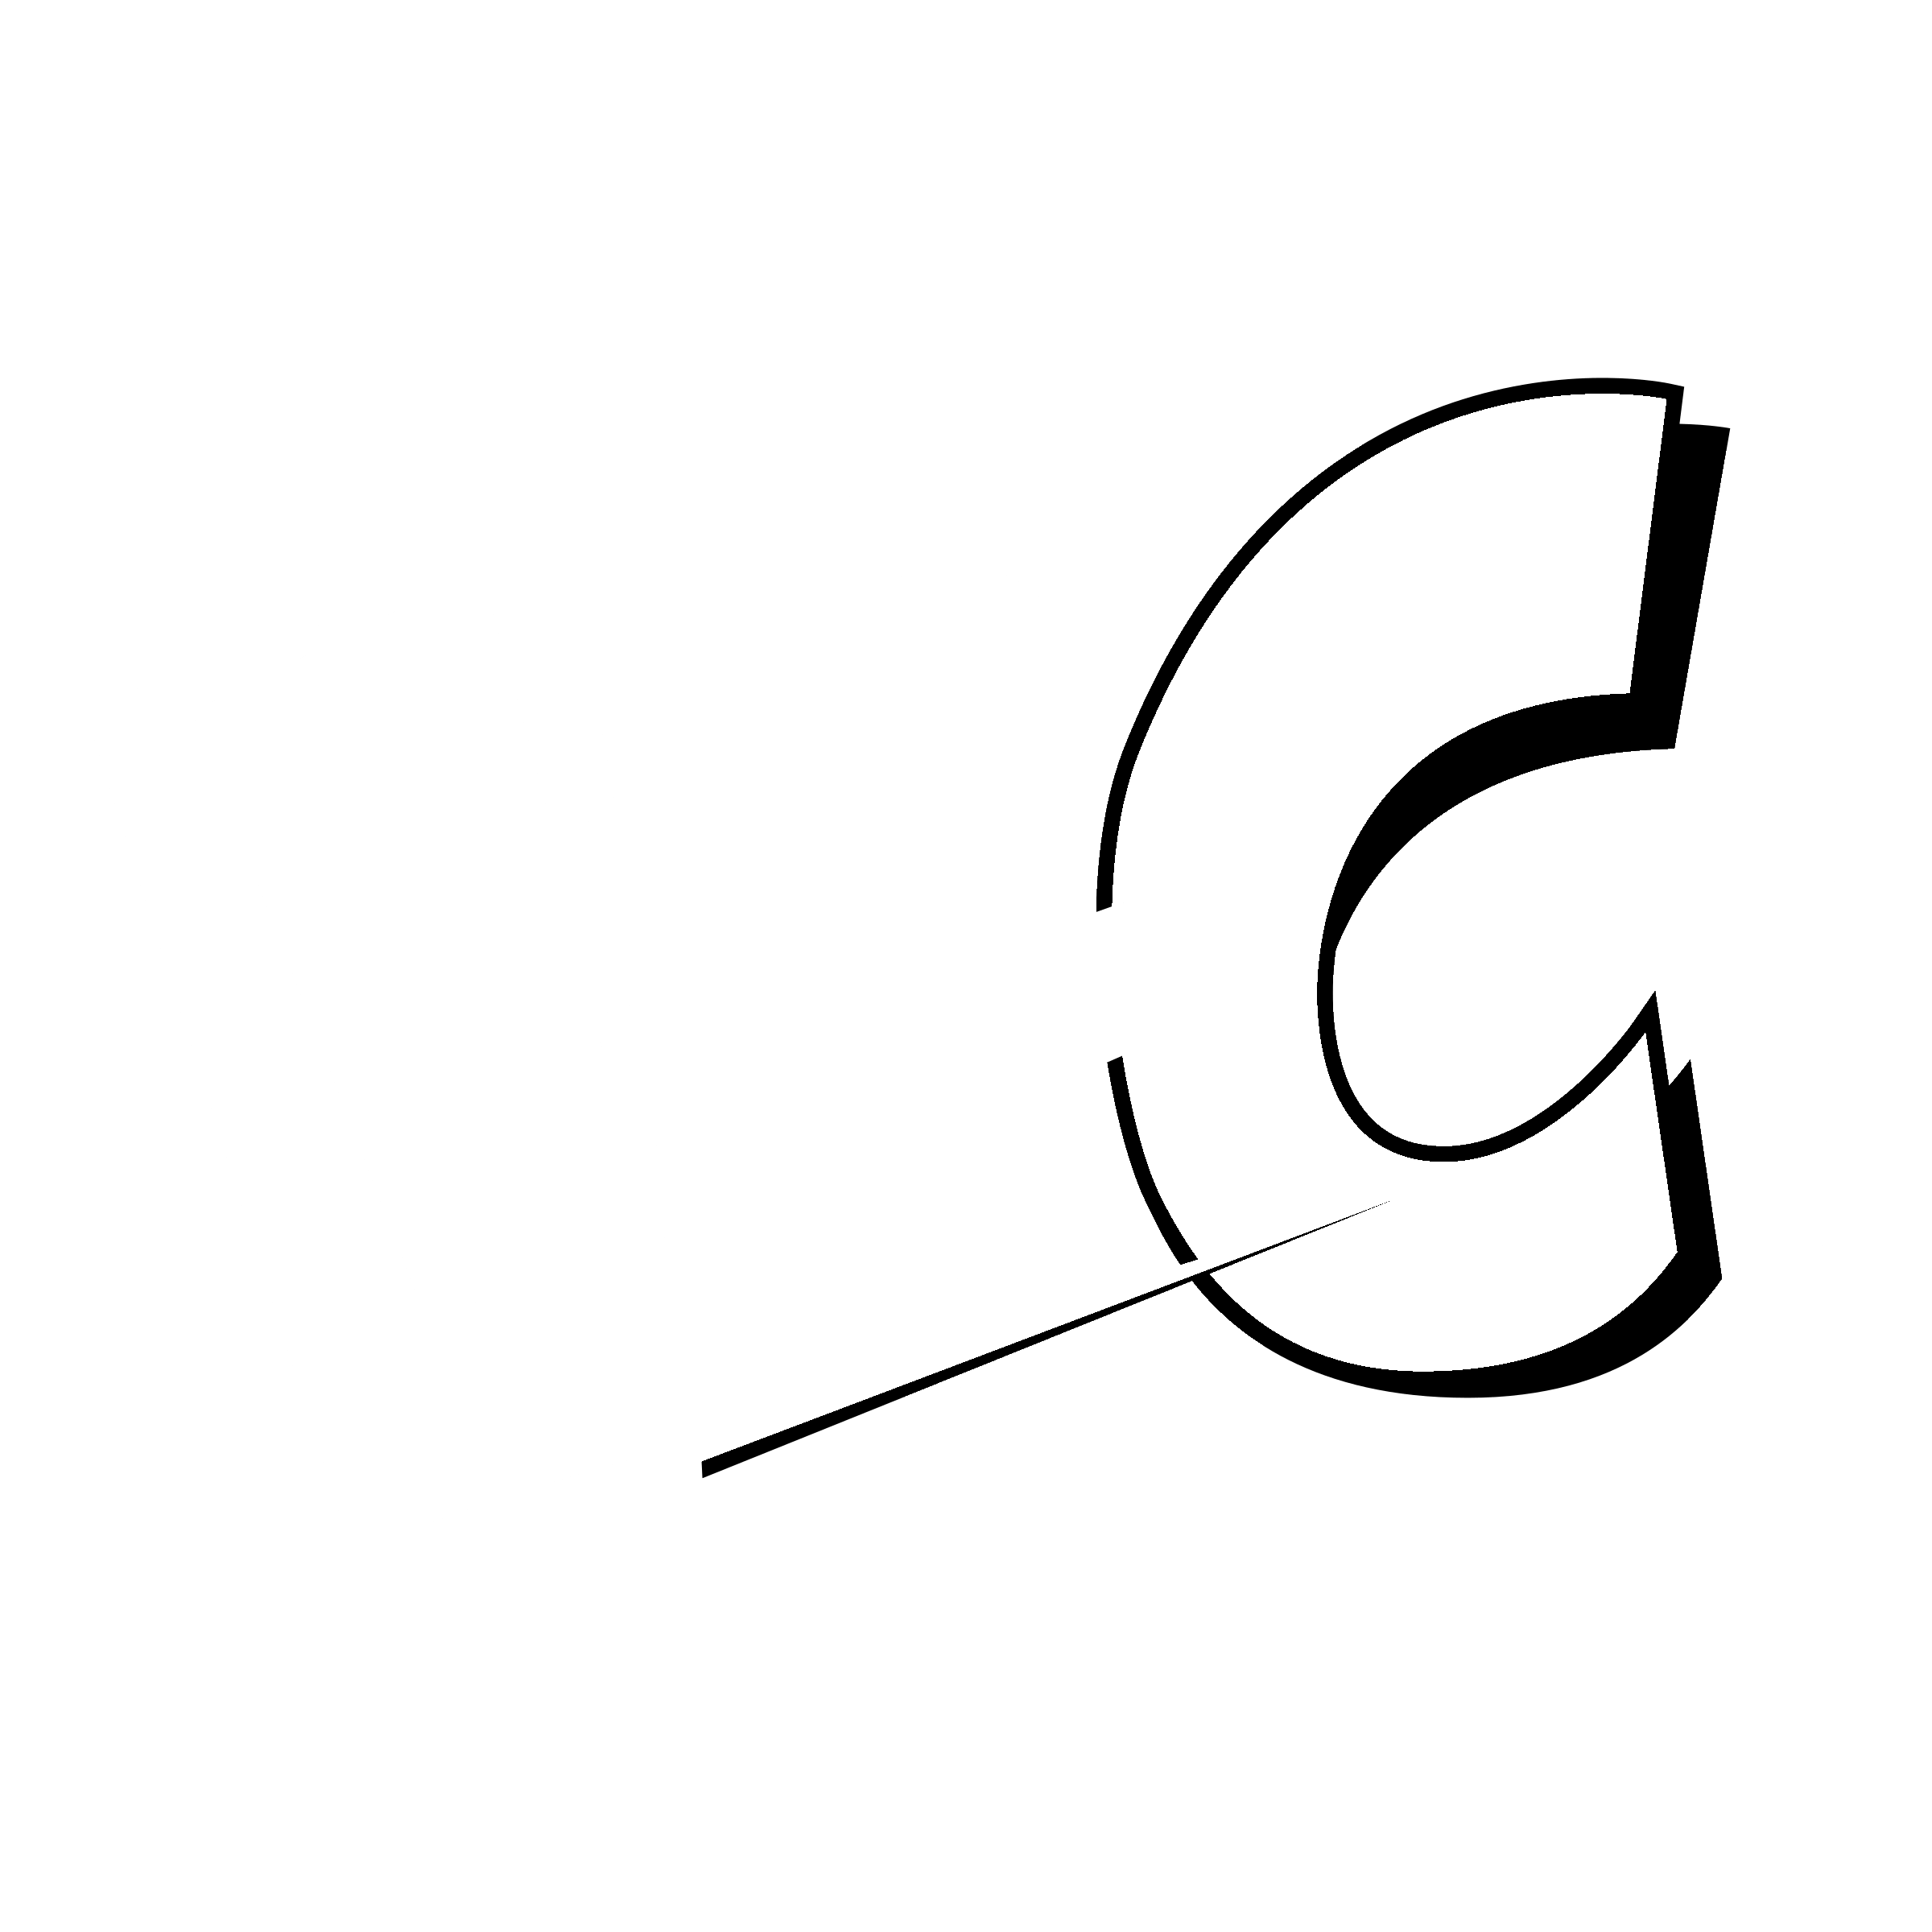 Hi-C Logo - Hi C Logo PNG Transparent & SVG Vector